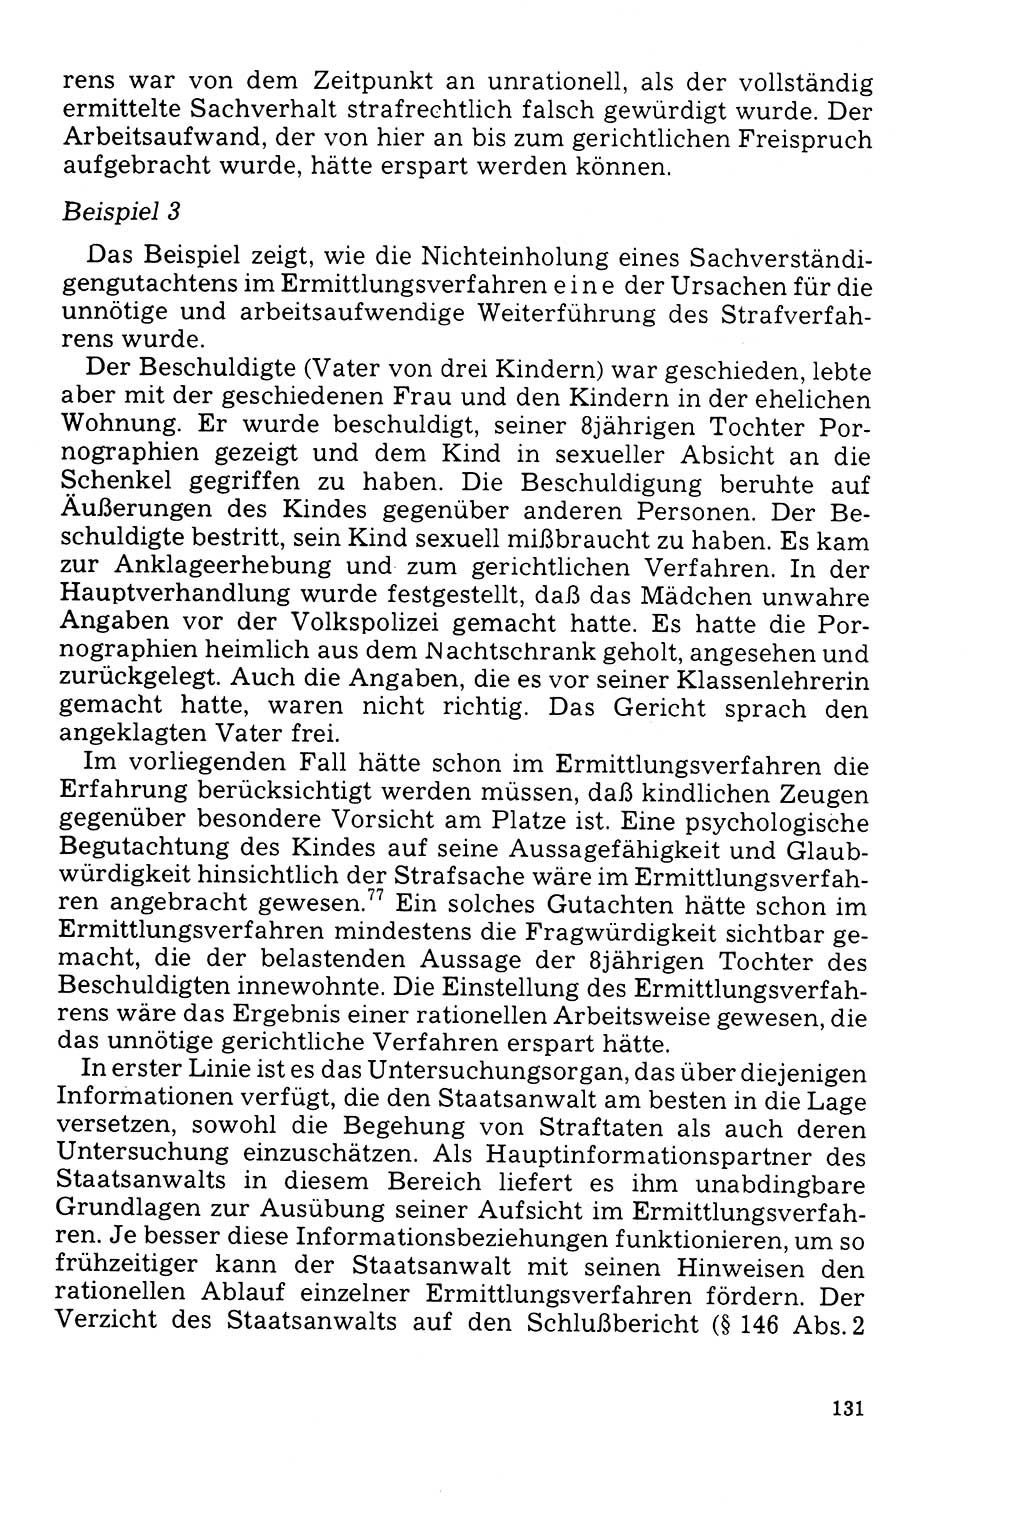 Der Abschluß des Ermittlungsverfahrens [Deutsche Demokratische Republik (DDR)] 1978, Seite 131 (Abschl. EV DDR 1978, S. 131)